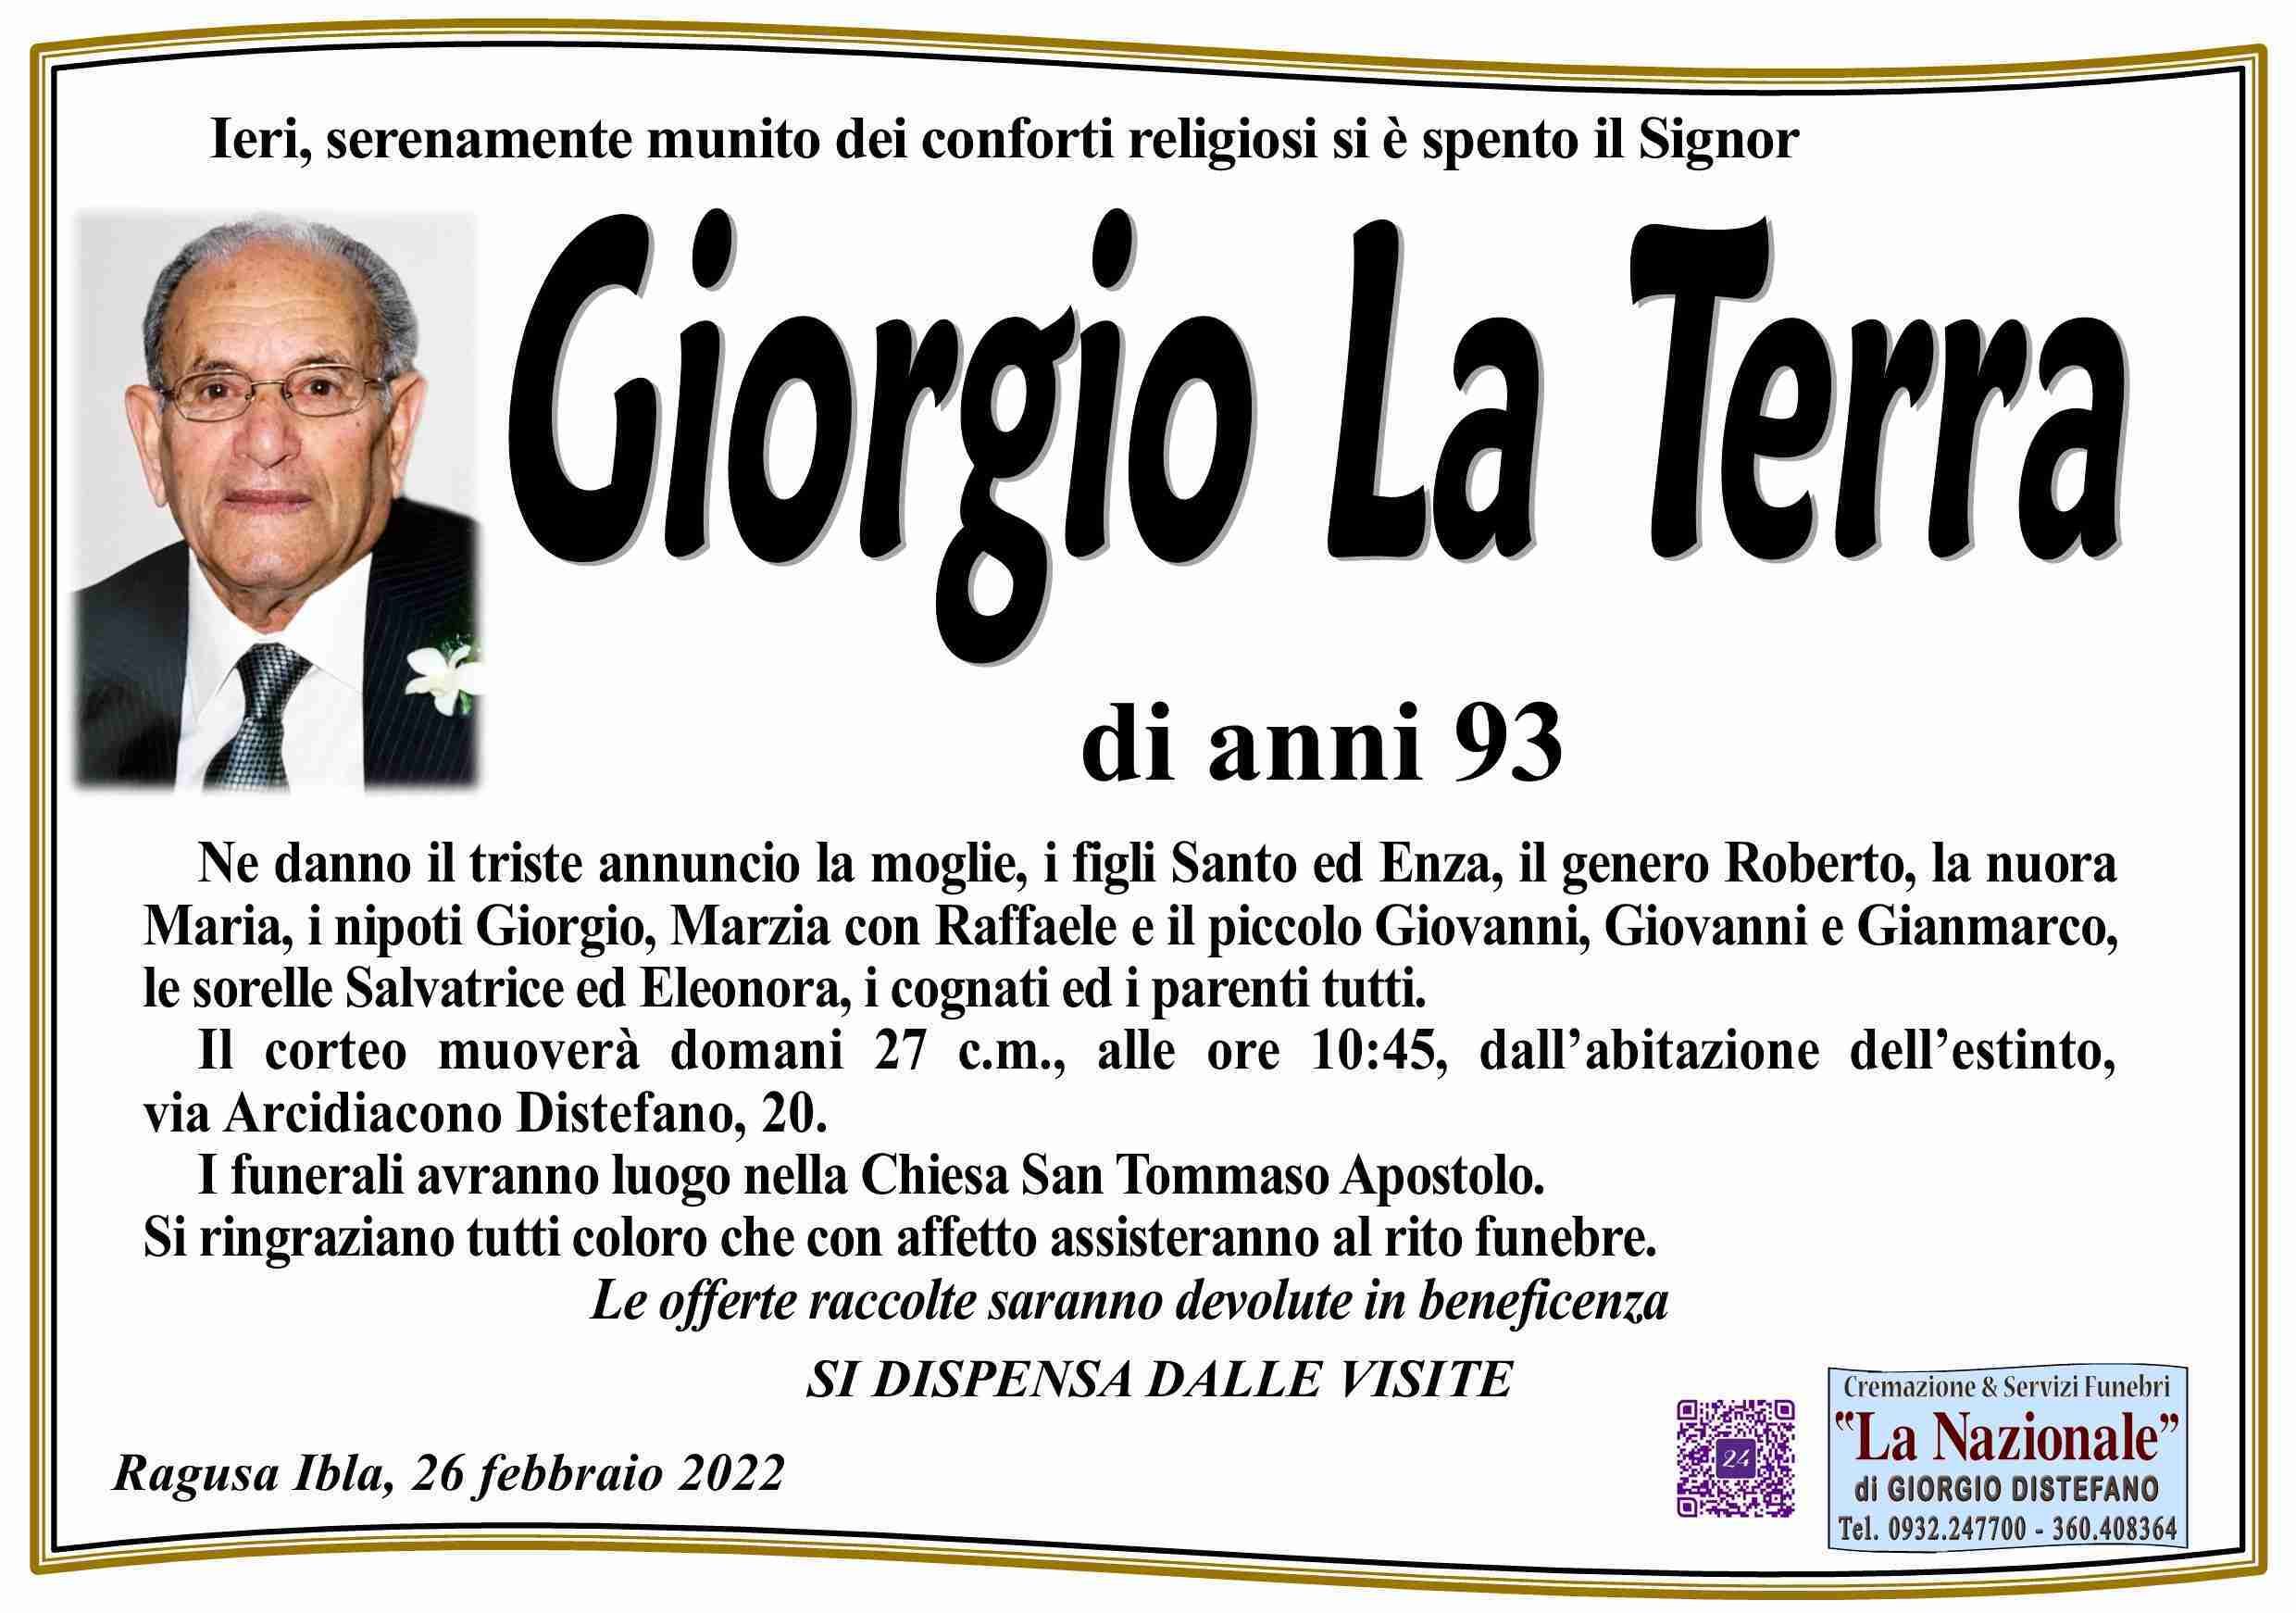 Giorgio La Terra